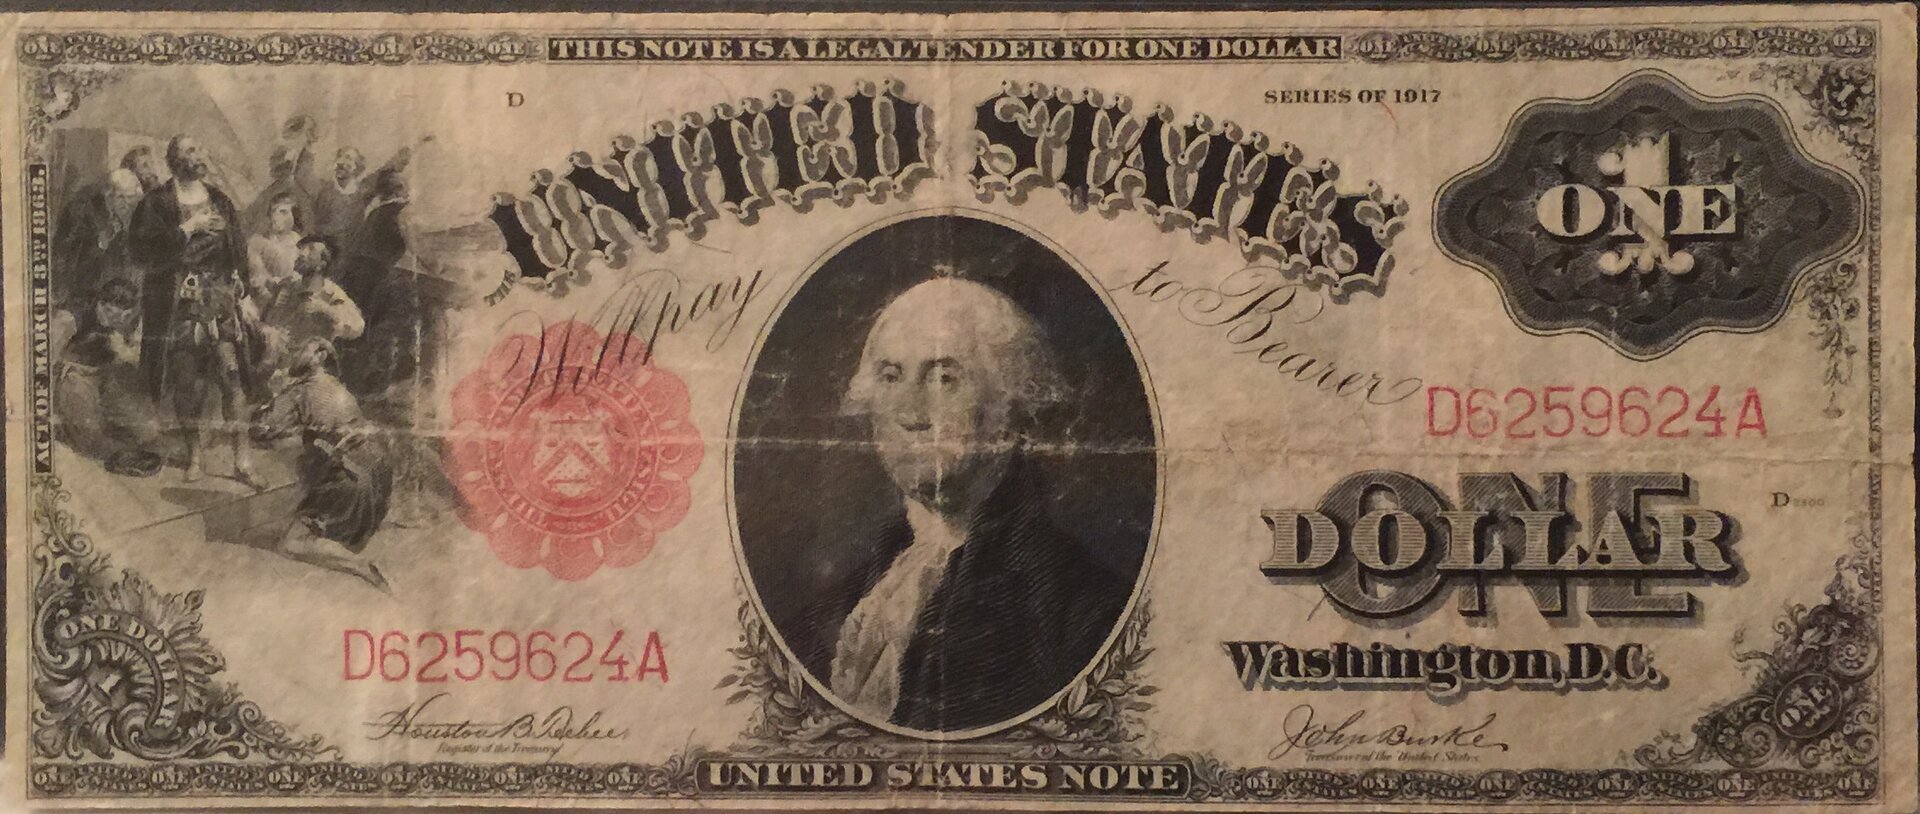 1917 $1 Legal Tender Note.jpg